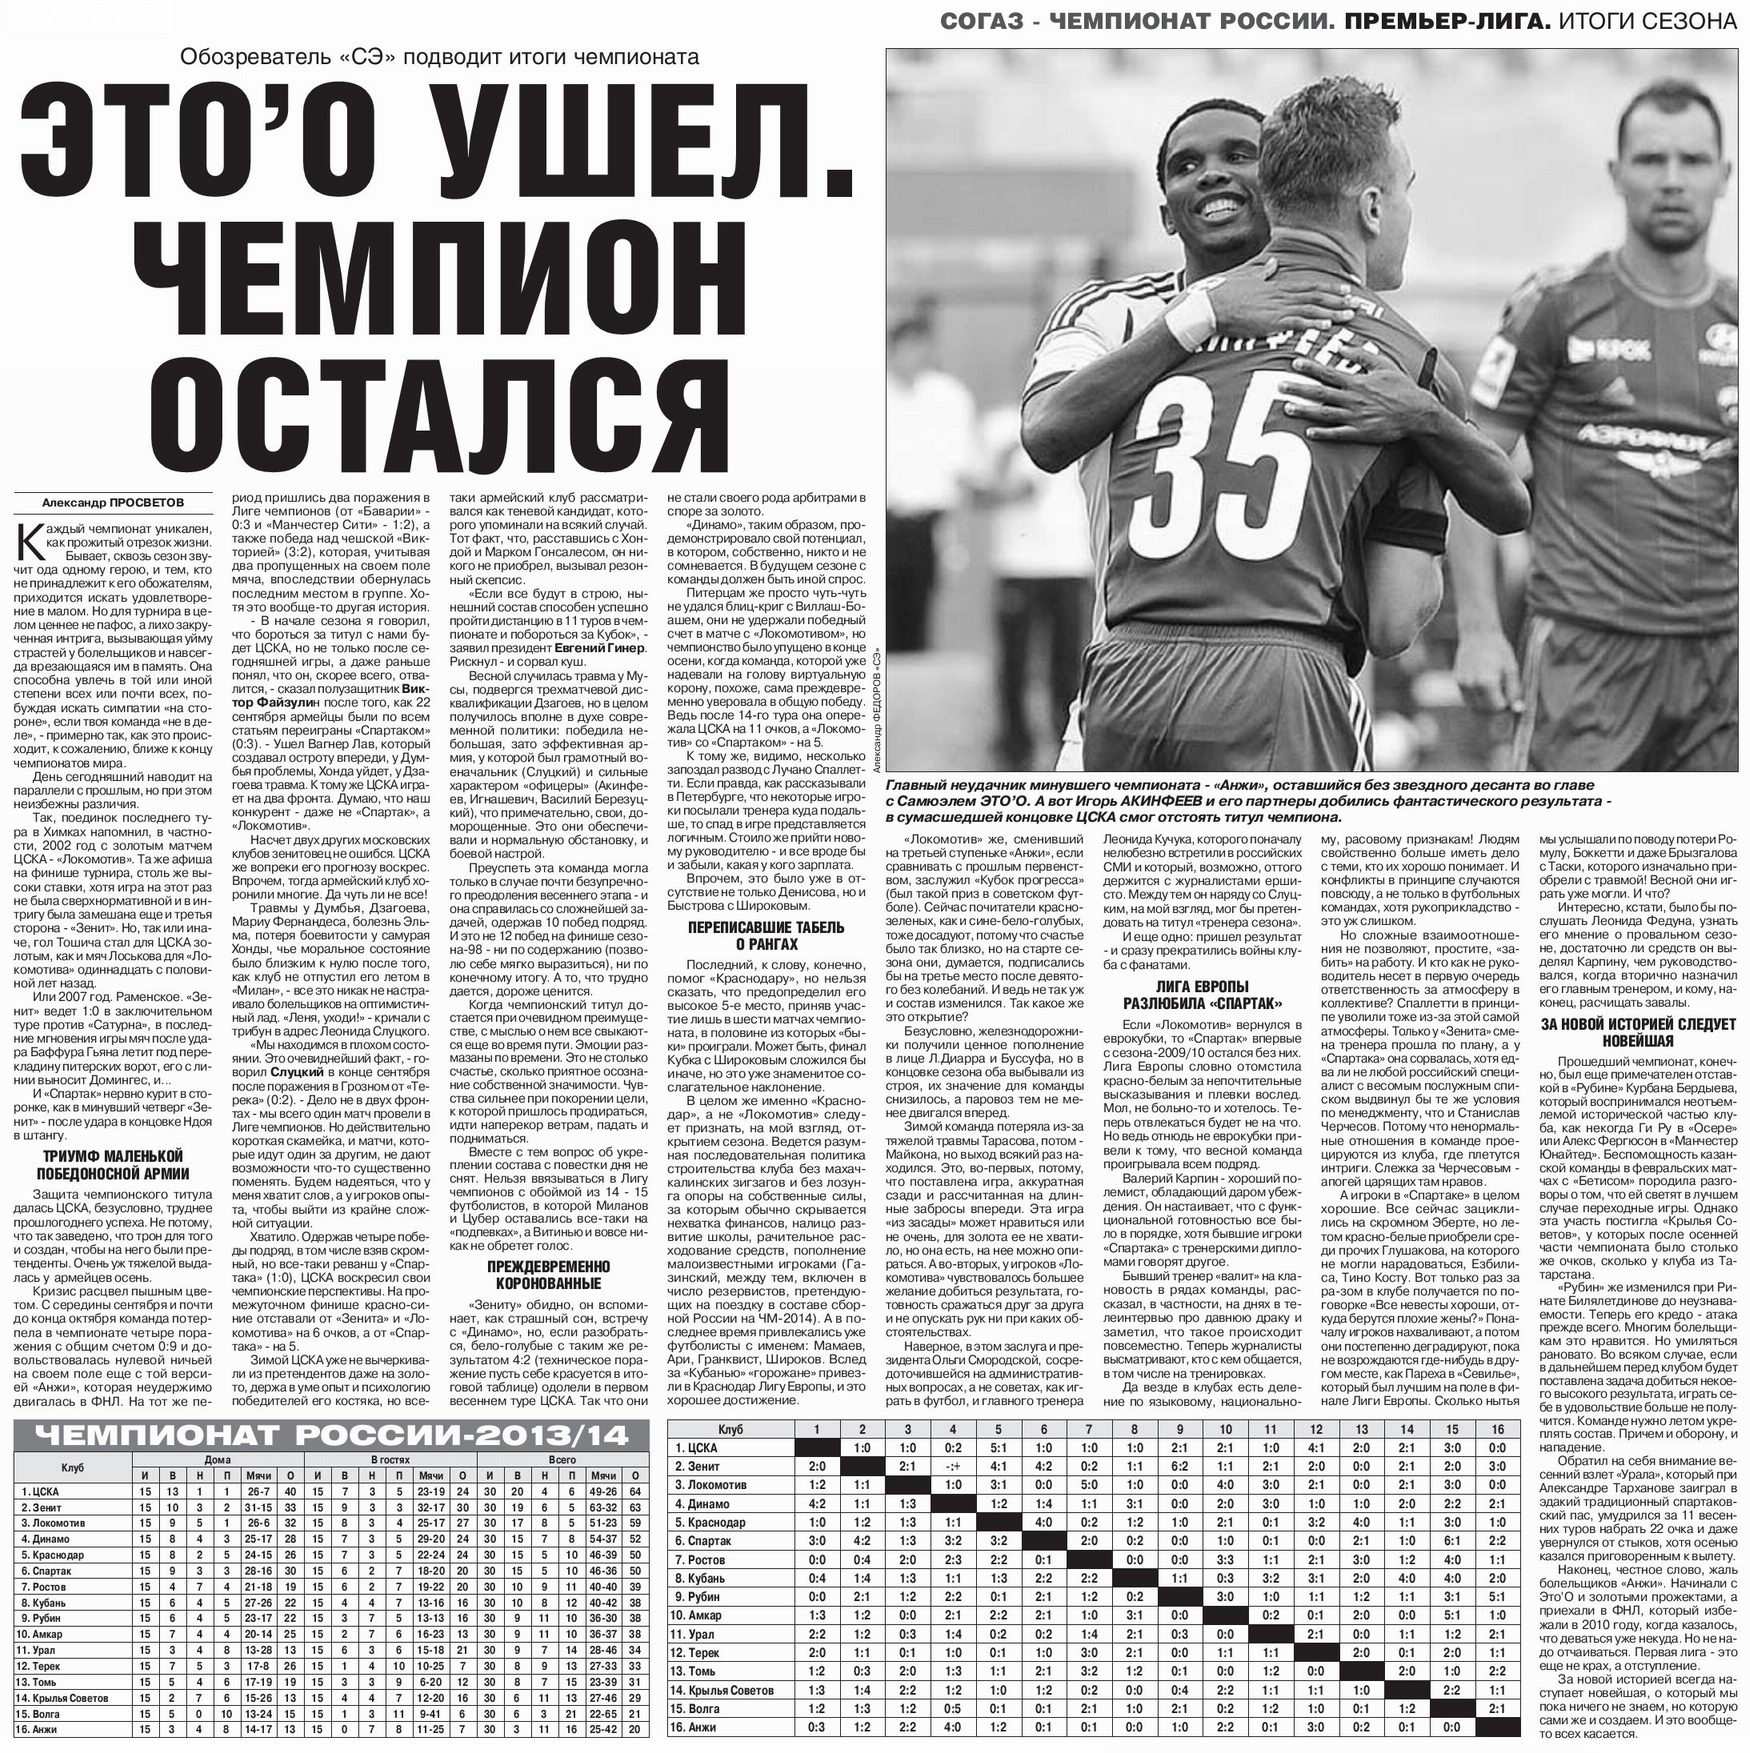 2014.CSKA